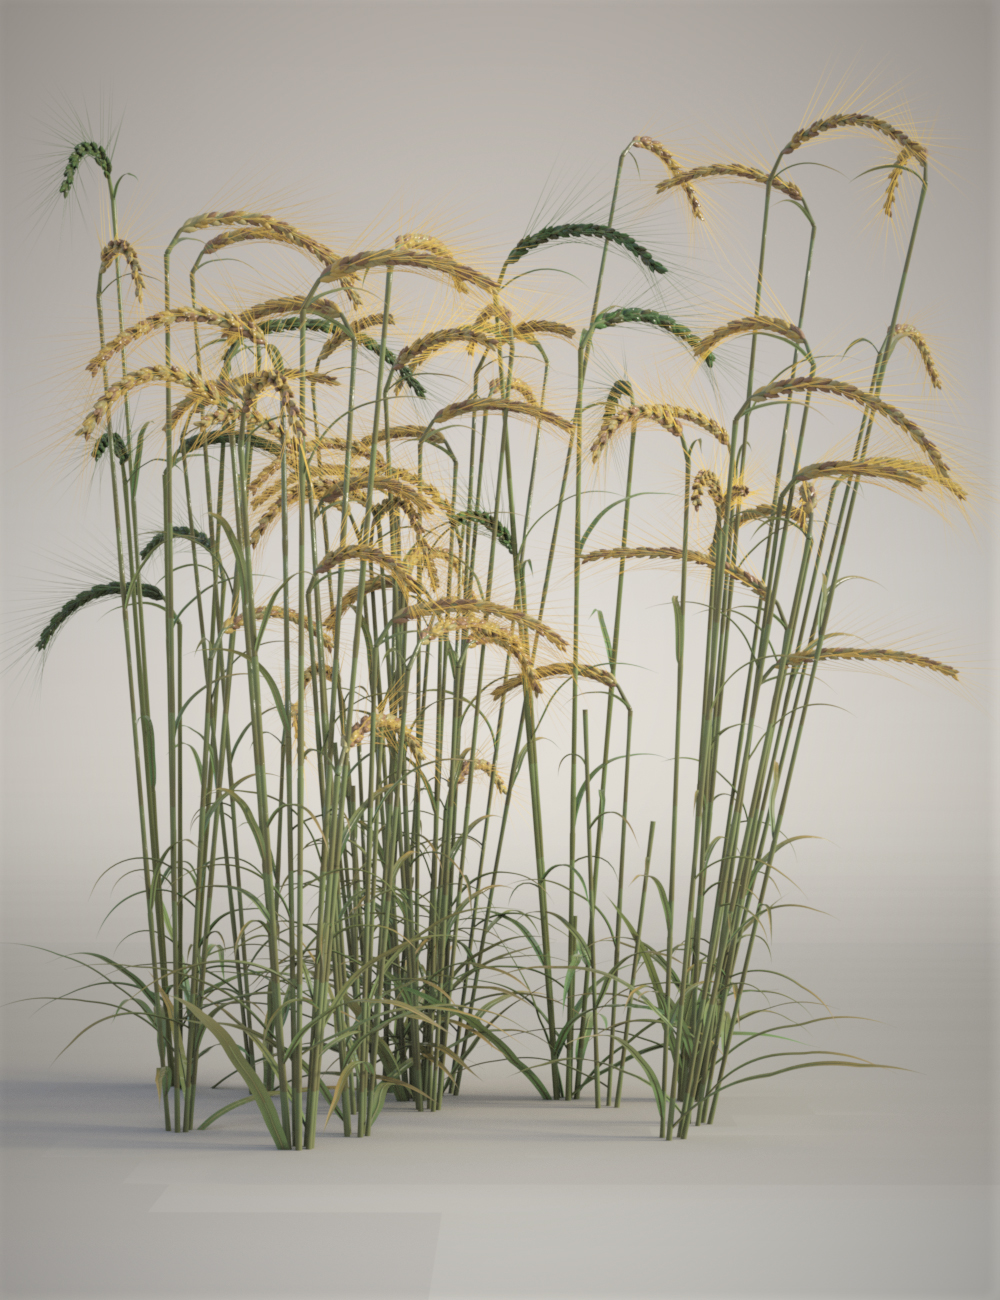 Wild Flower Plants vol 4 - Wheatfields by: MartinJFrost, 3D Models by Daz 3D